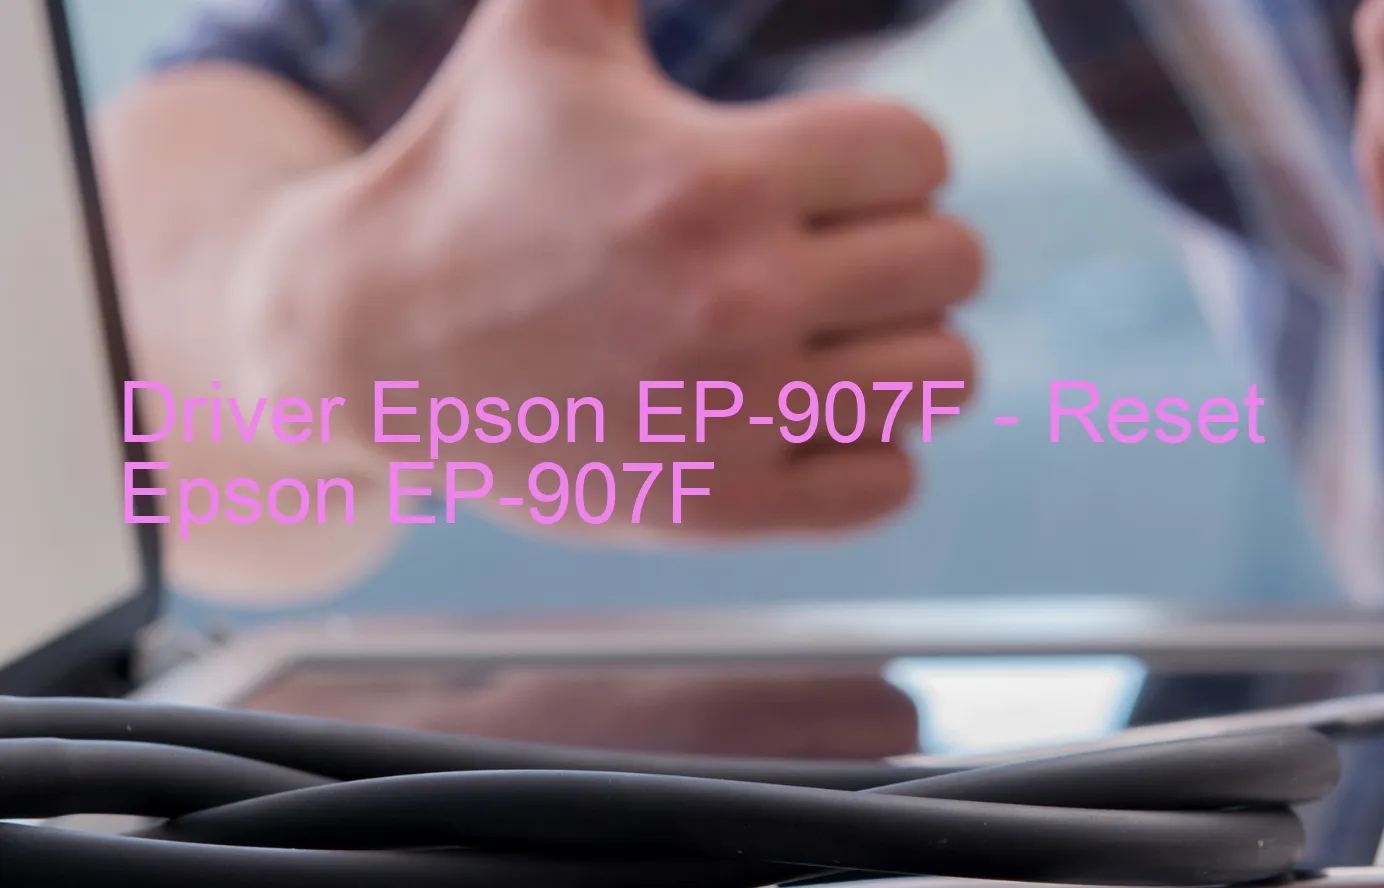 Epson EP-907Fのドライバー、Epson EP-907Fのリセットソフトウェア